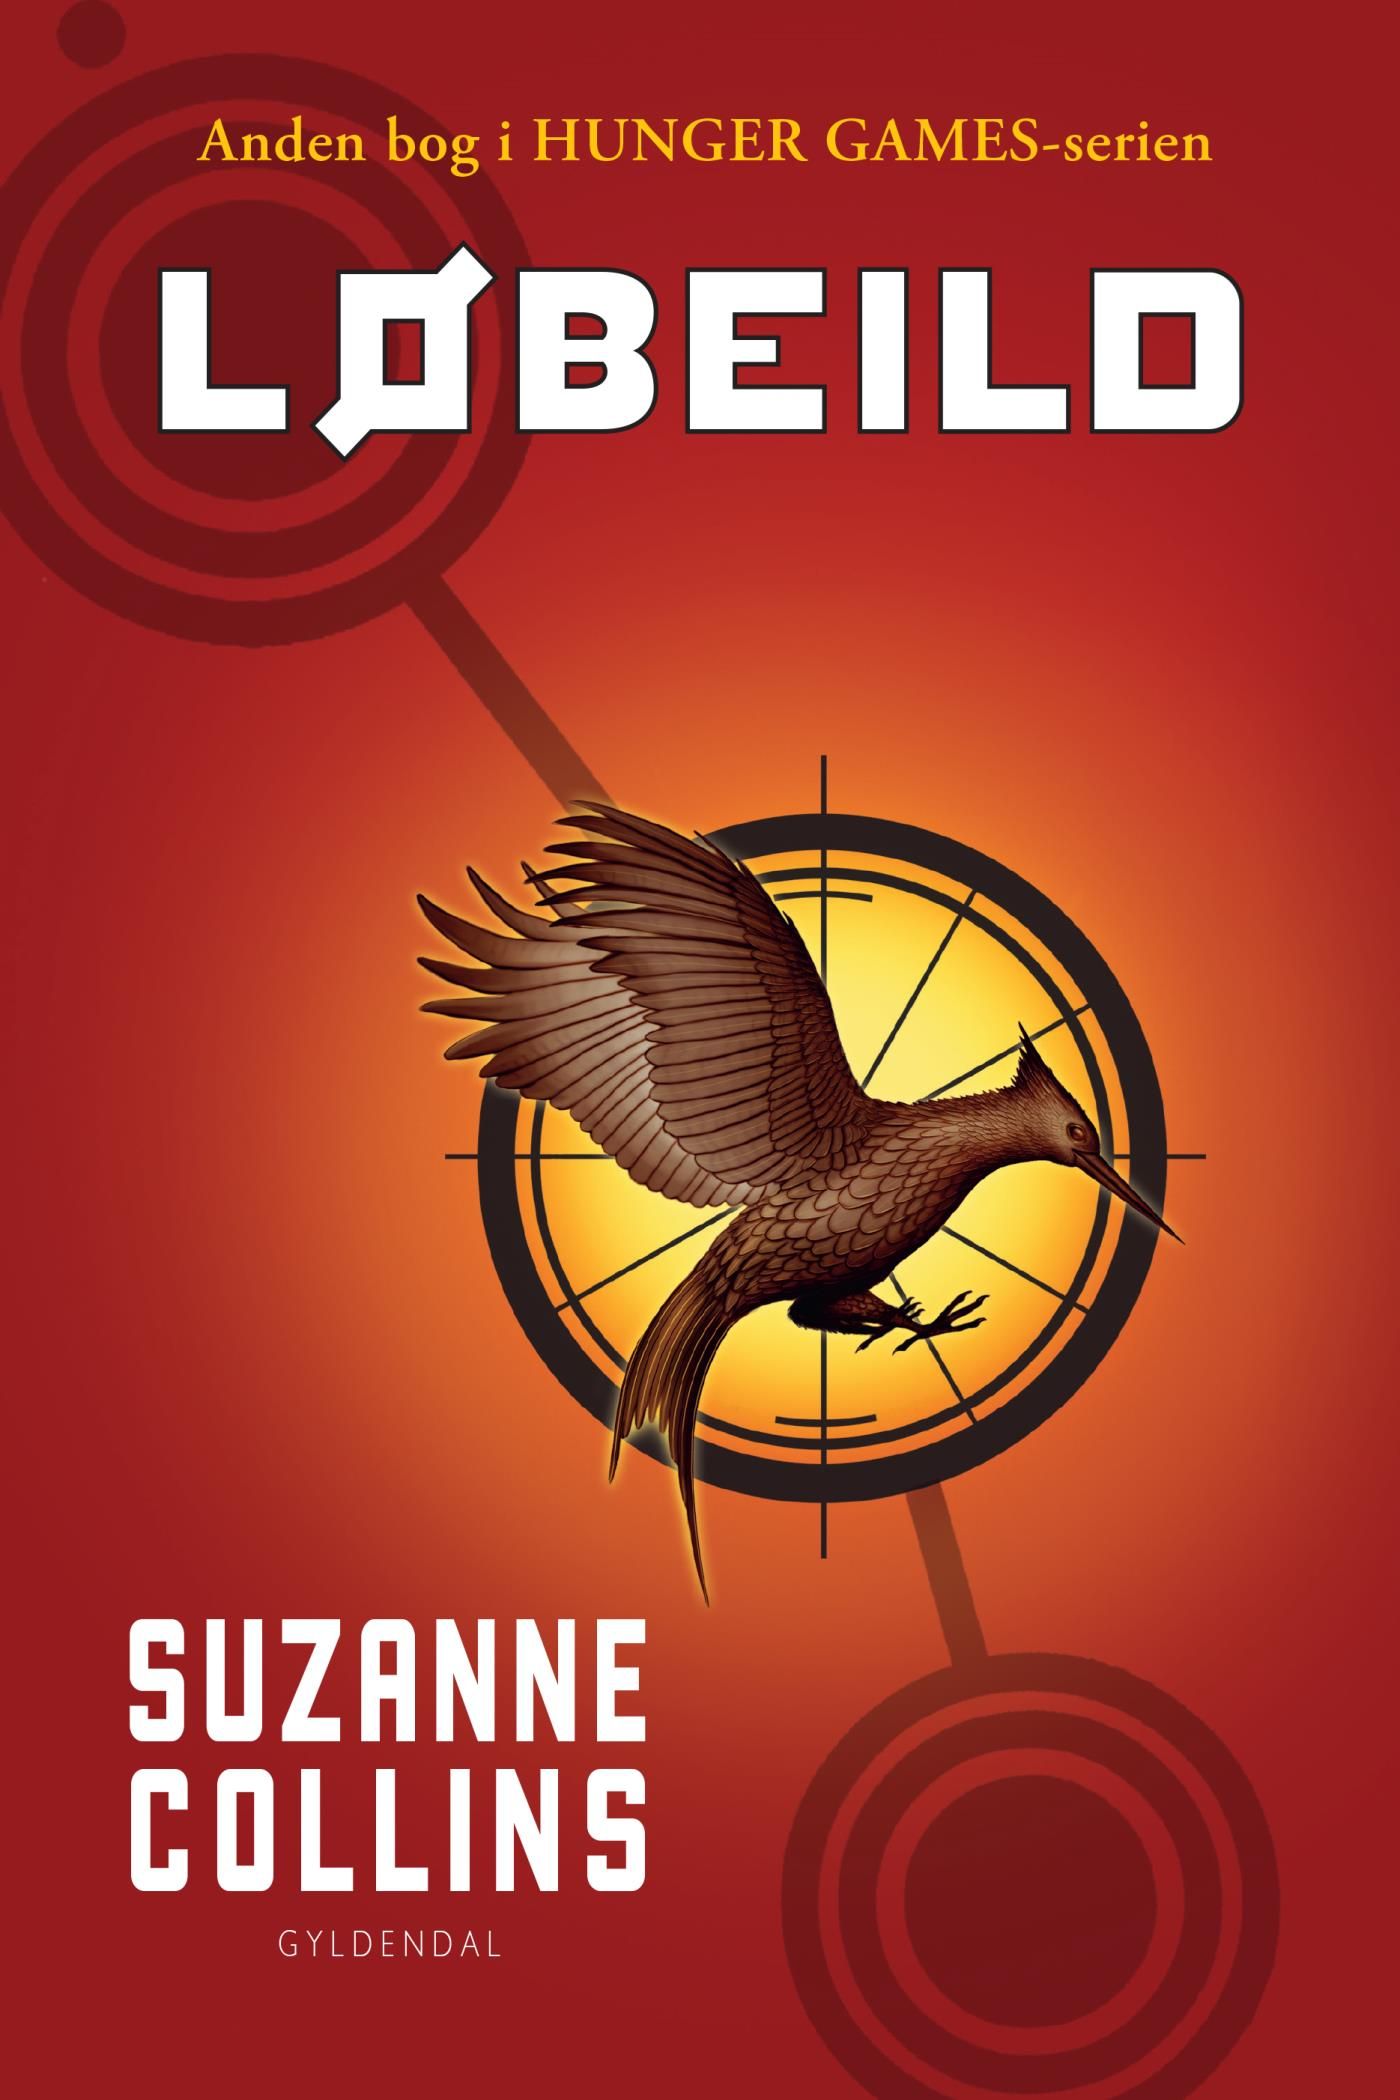 The Hunger Games 2 - Løbeild, e-bog af Suzanne Collins